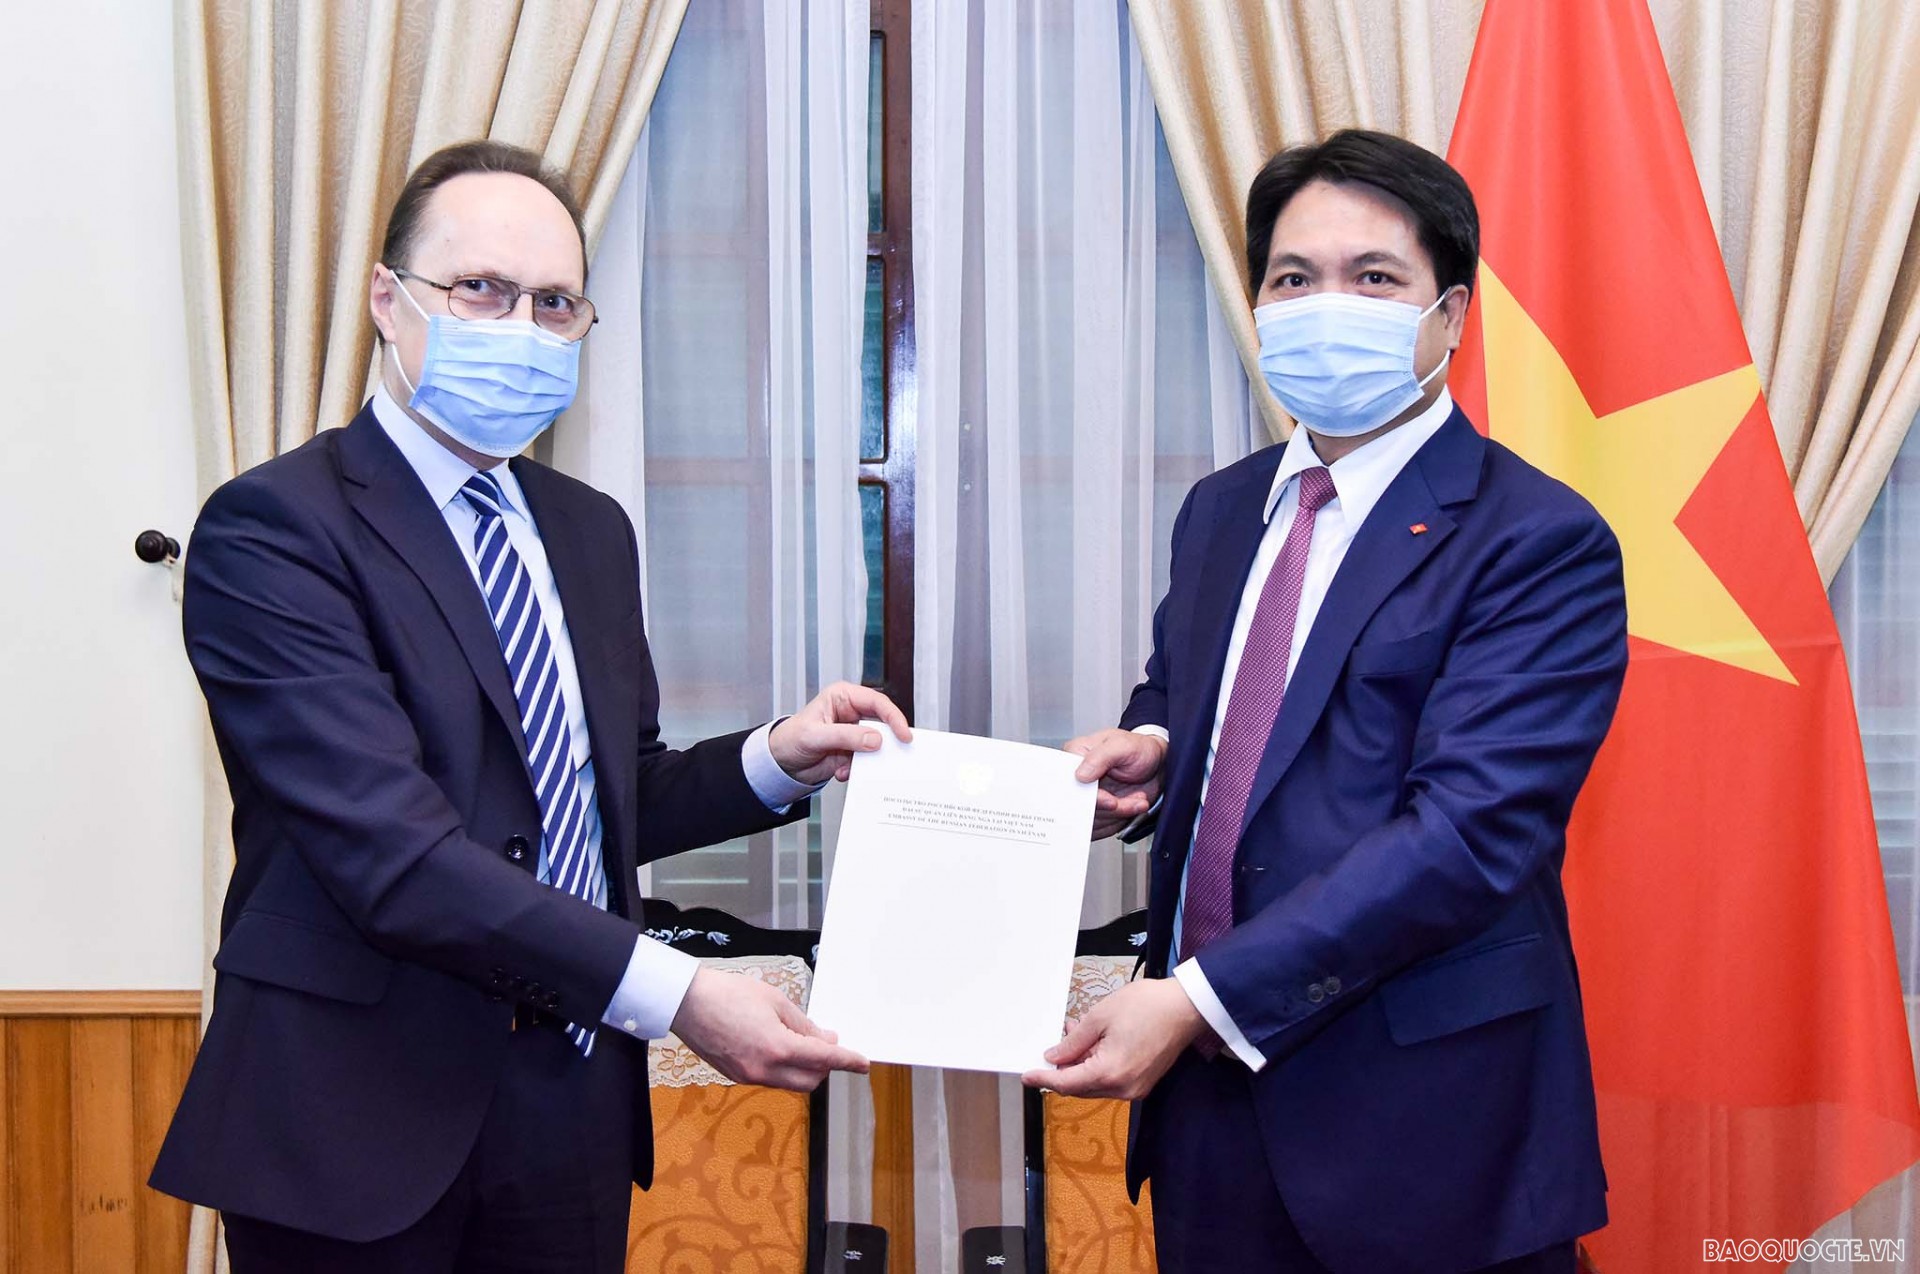 Việt Nam tiếp nhận bản sao Thư ủy nhiệm của Tổng thống Nga bổ nhiệm Đại sứ tại Việt Nam